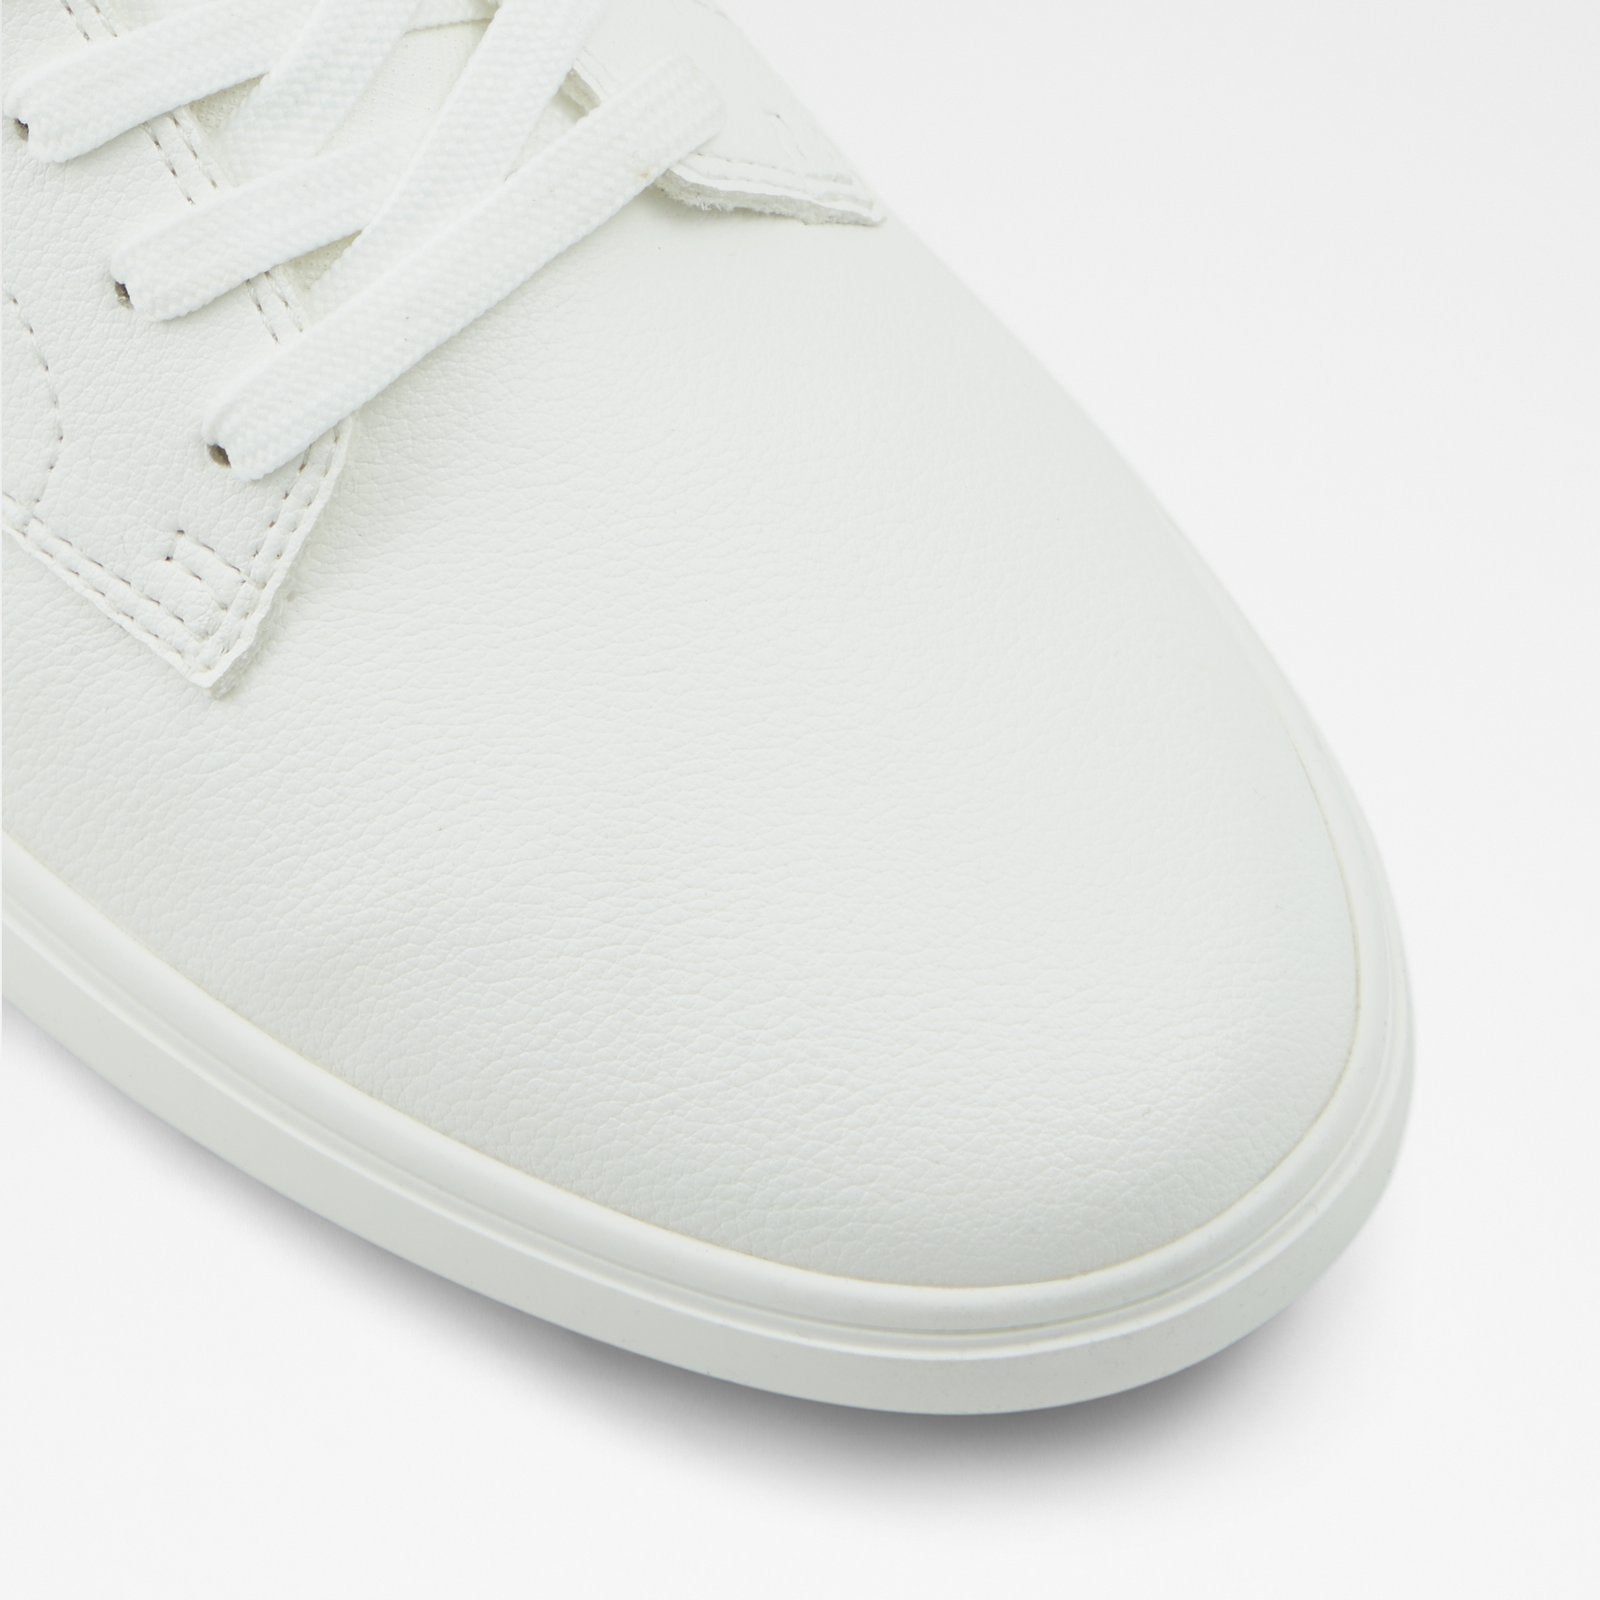 Rigidus / Sneakers Men Shoes - White - ALDO KSA